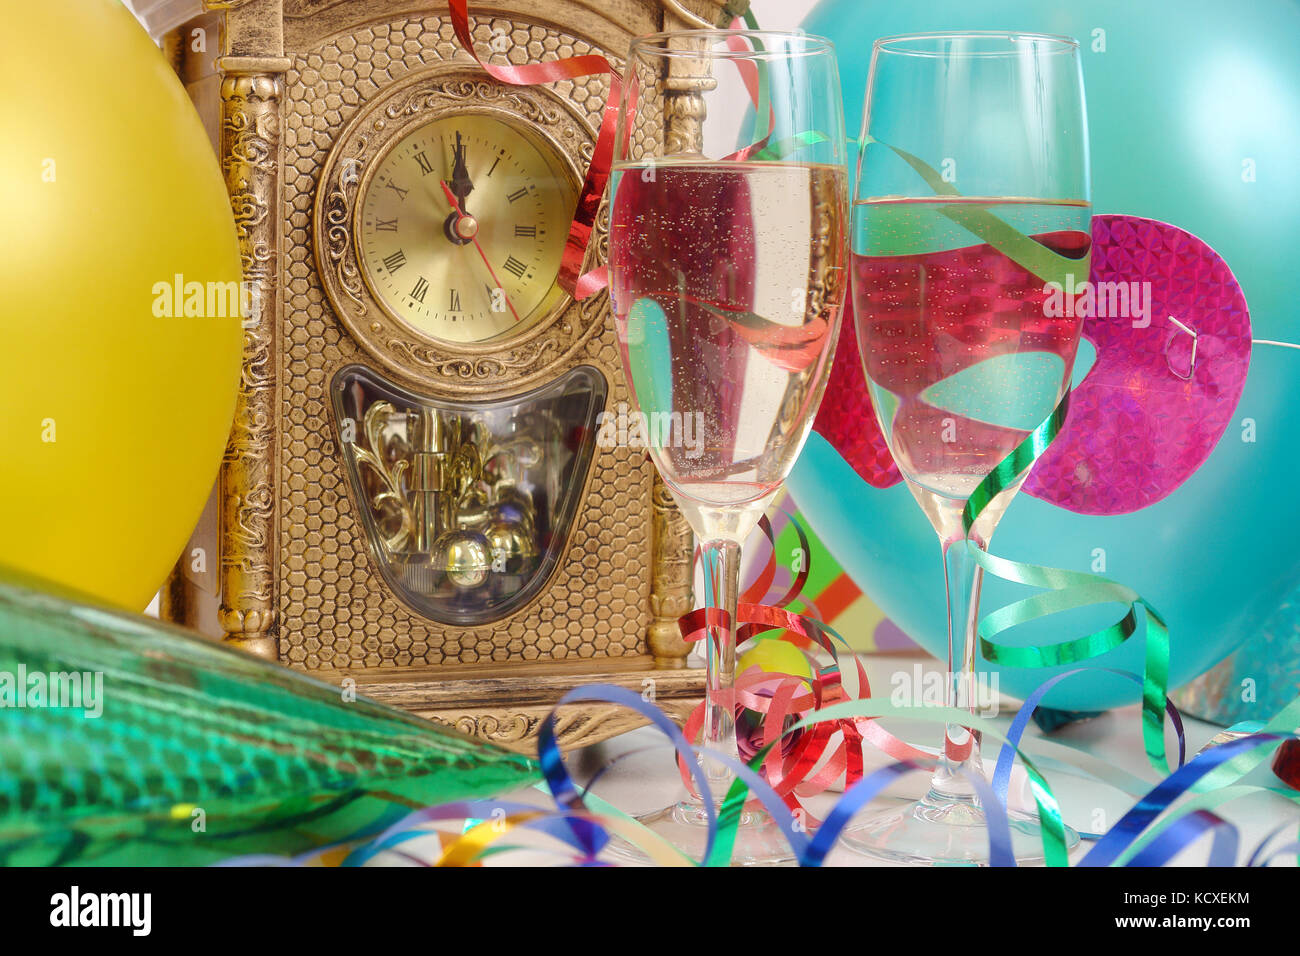 Horloge de table montrant presque minuit, banderoles, ballons, et deux verres de champagne Banque D'Images